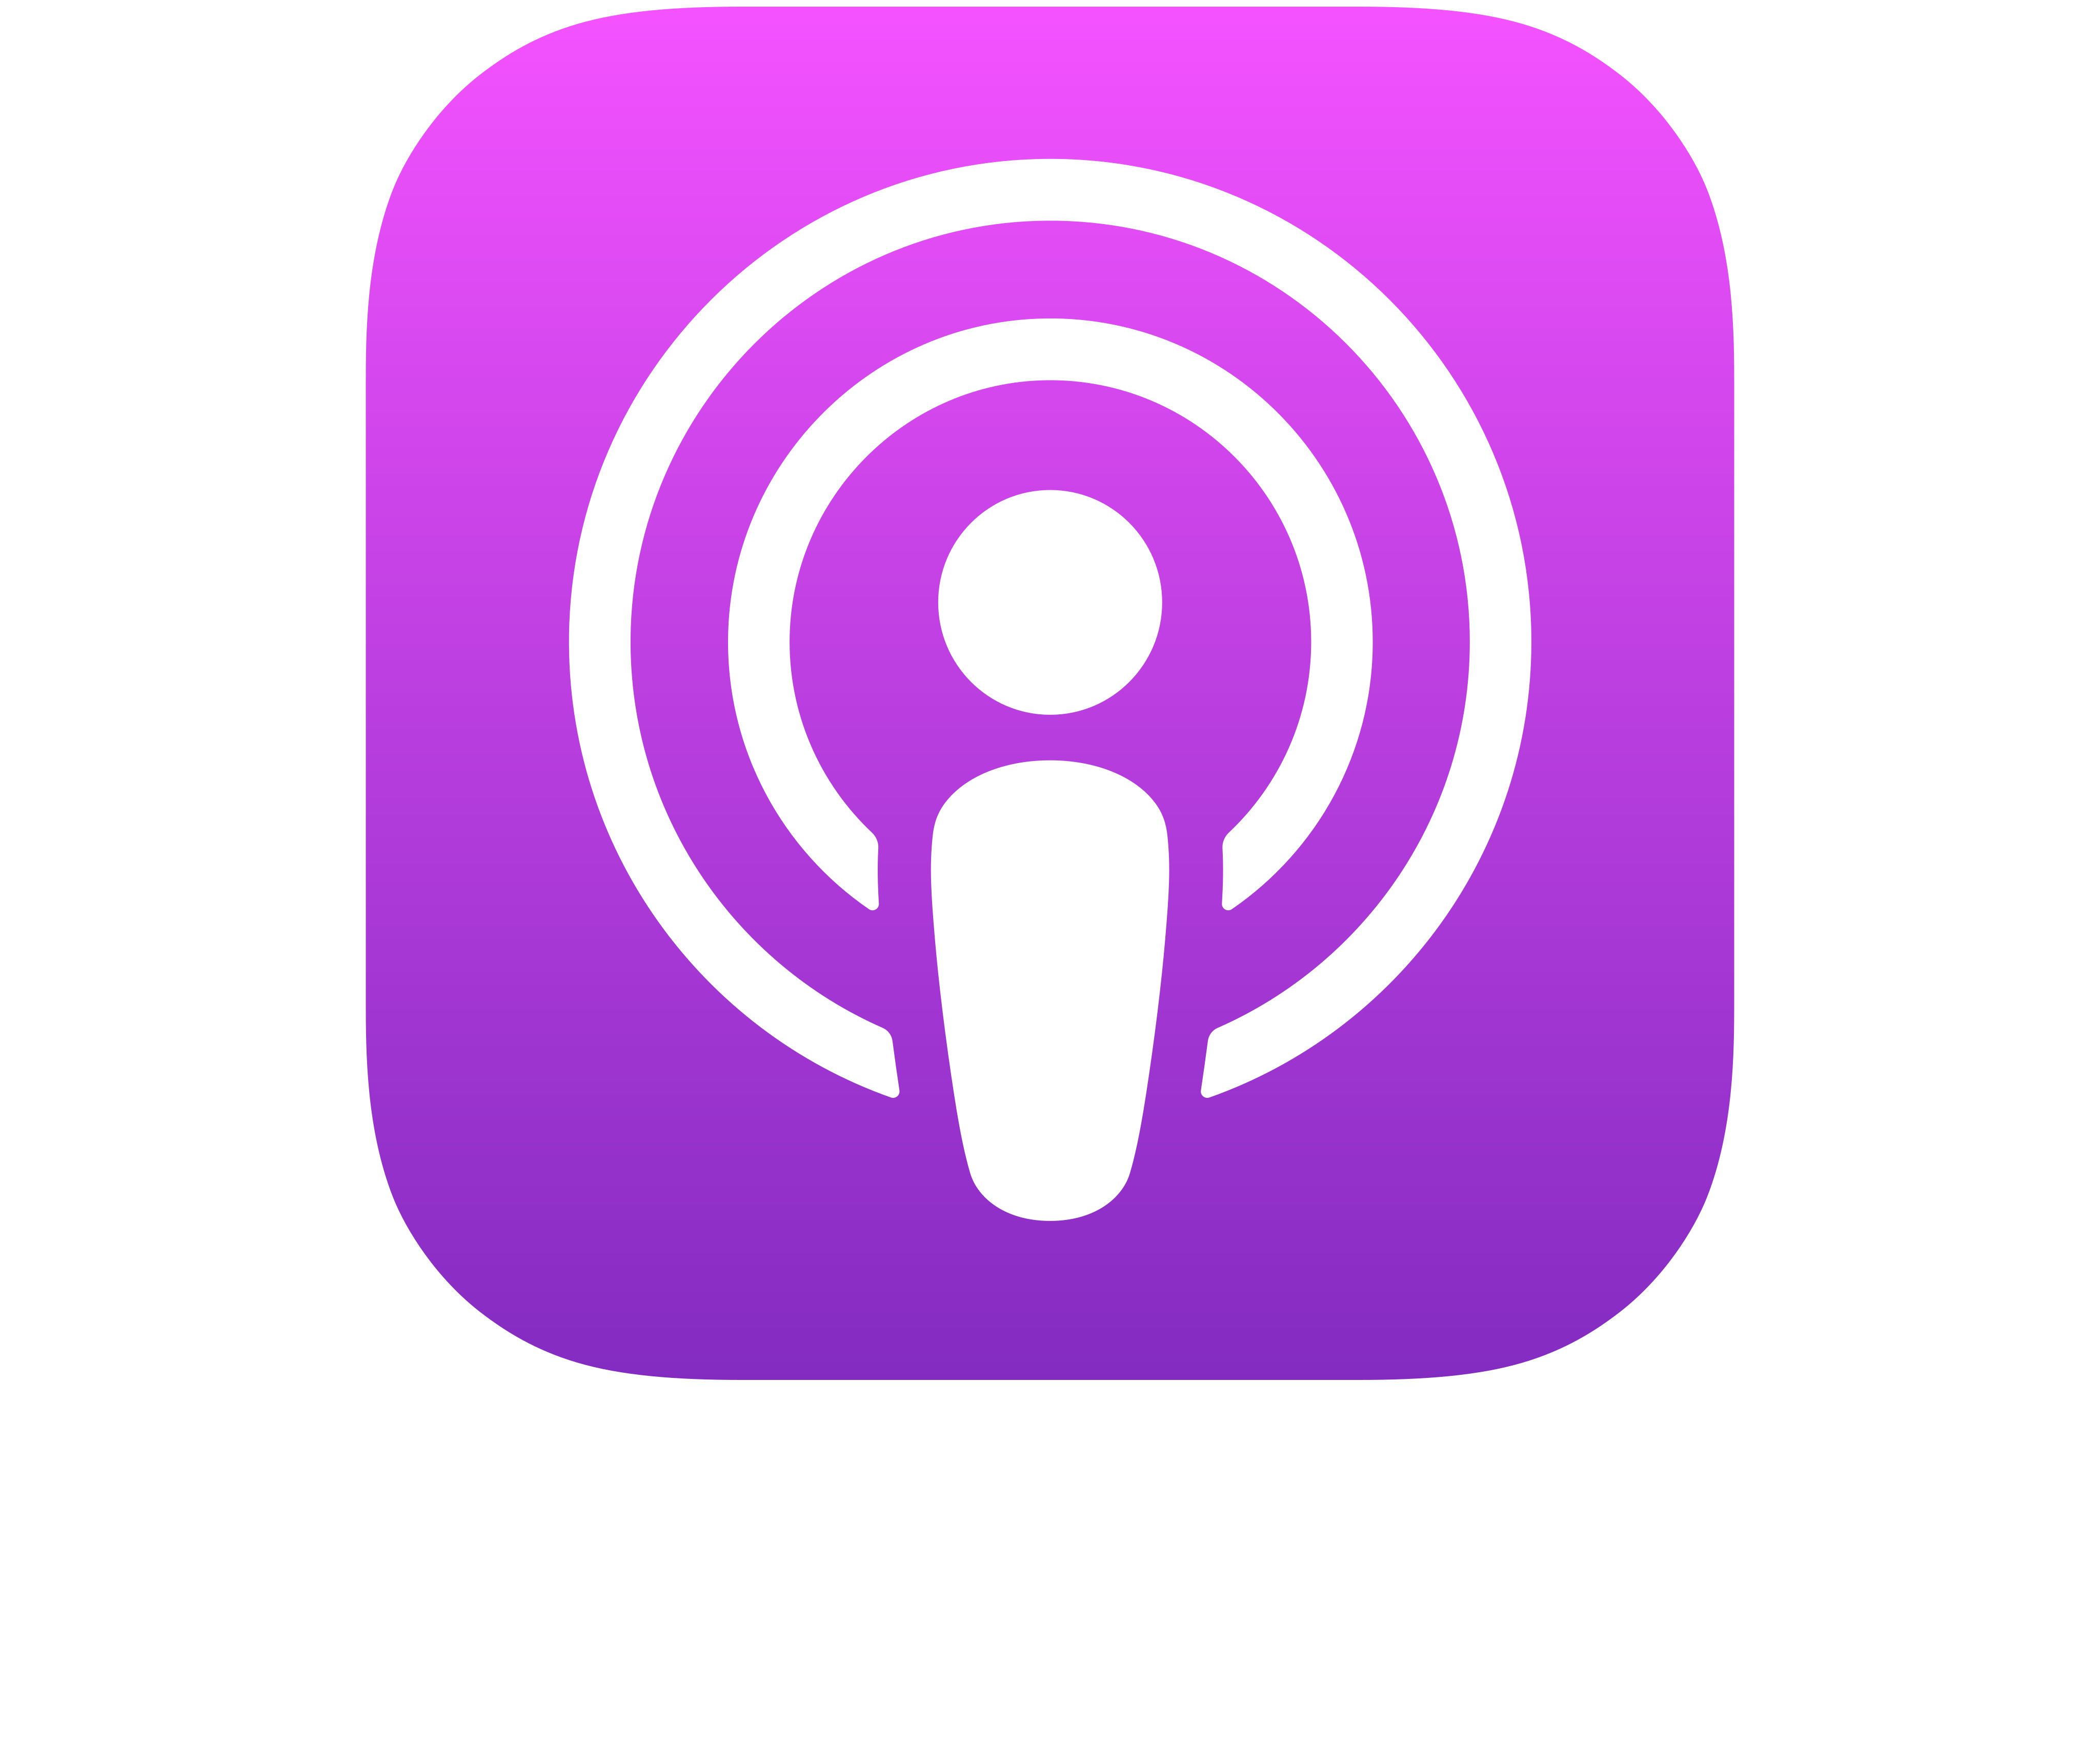 Apple Podcast - podcasts Sciences pour tous